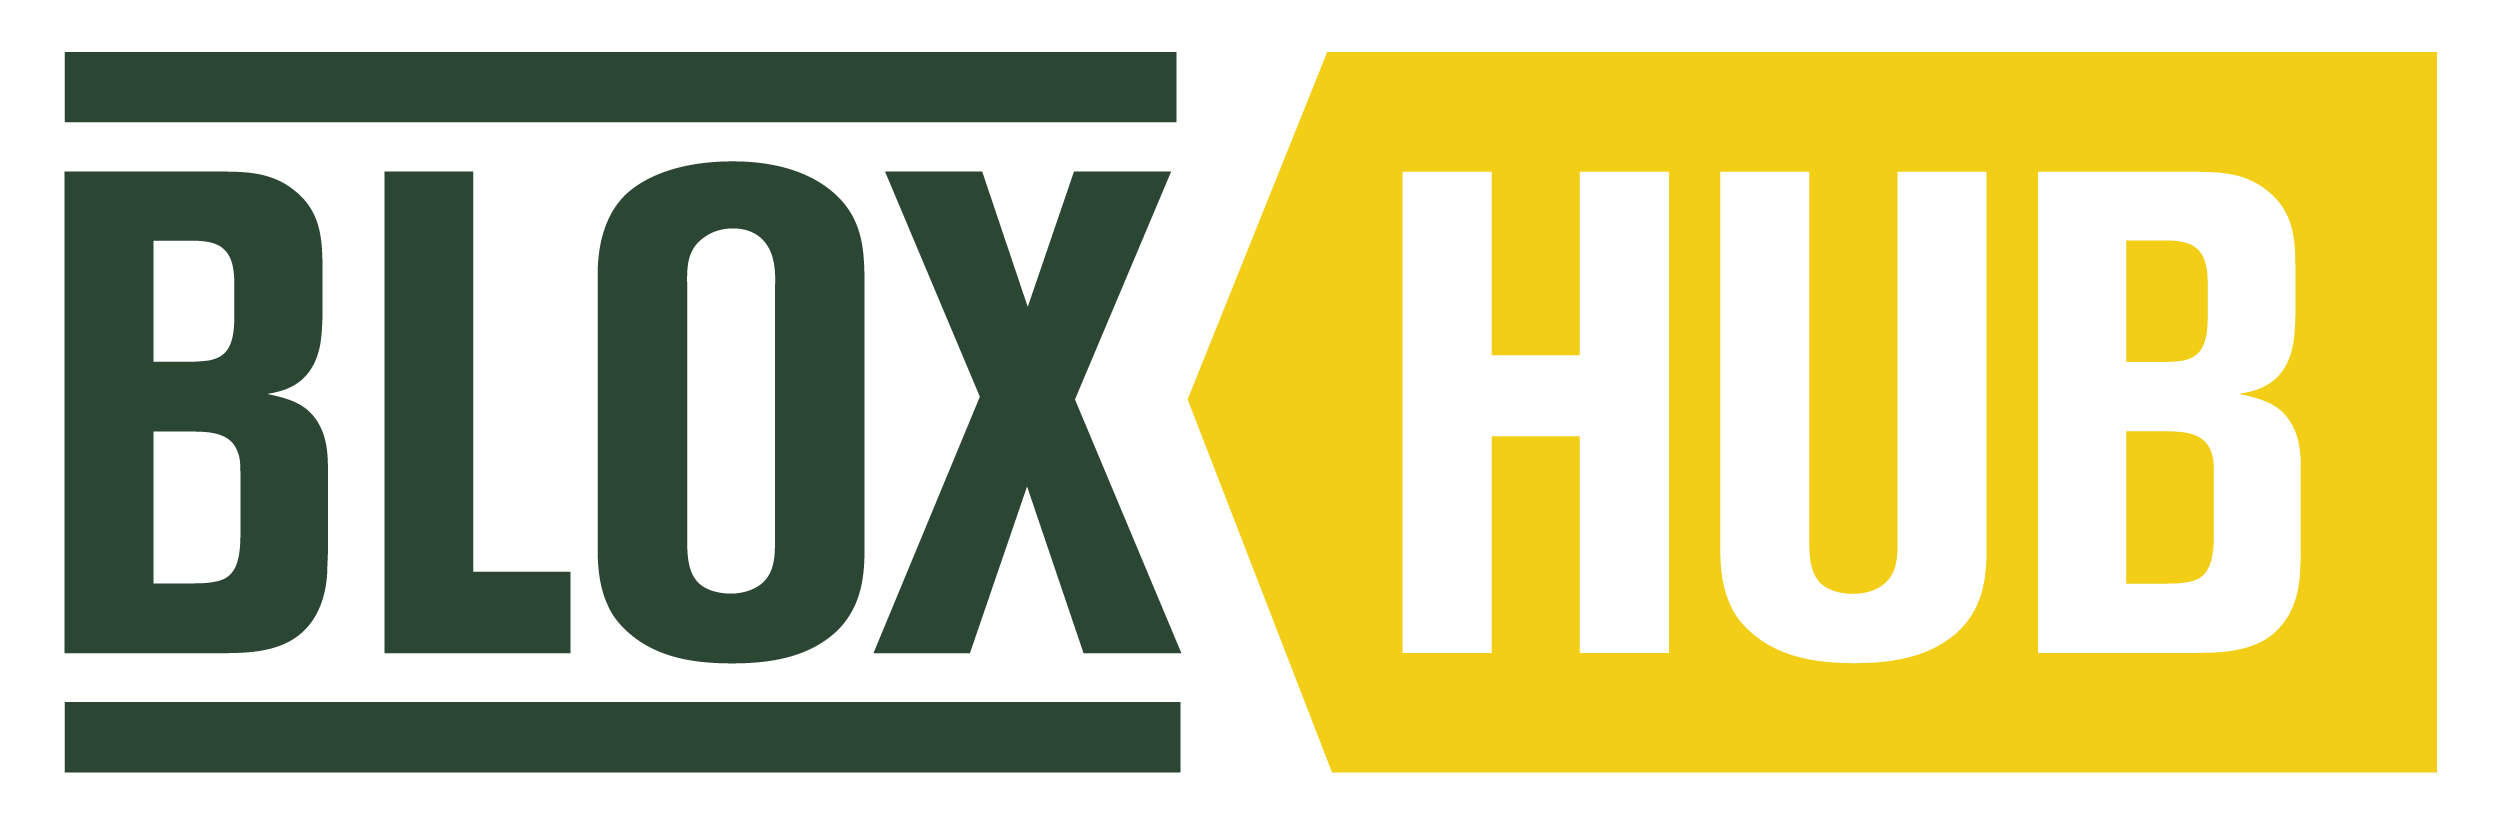 Blox Logo - BLOXHUB | Our urban future. Co-created.